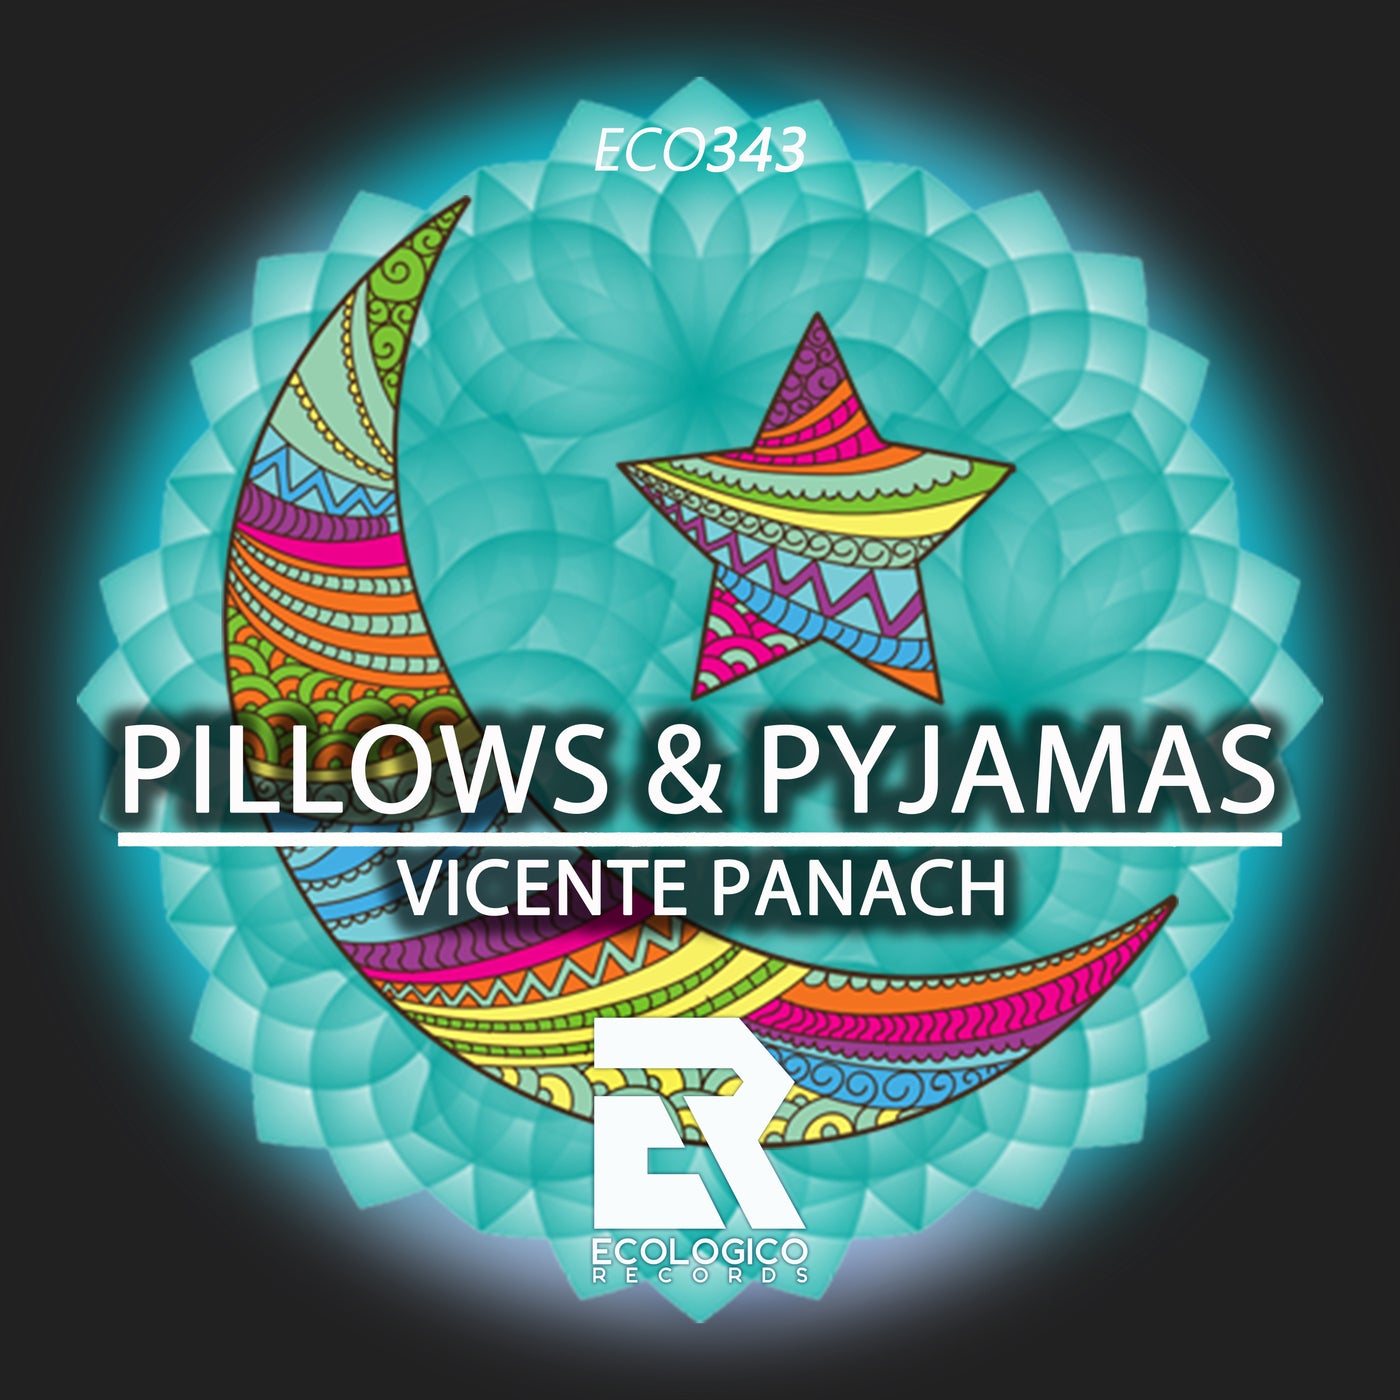 Pillows & Pyjamas